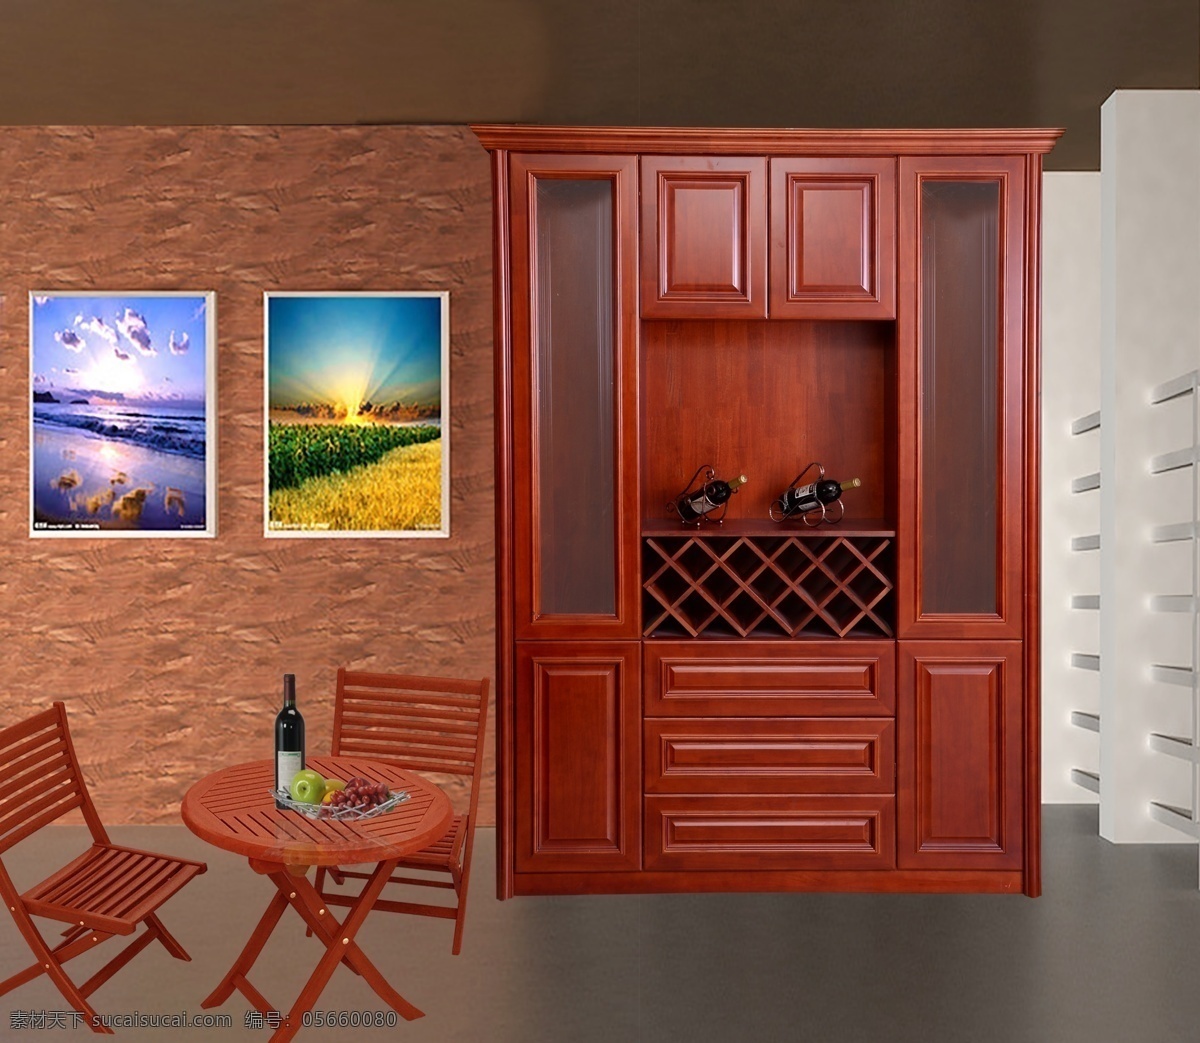 室内 陈设 壁画 红酒 红木 画册素材 抠图 桌椅 装饰素材 室内装饰用图